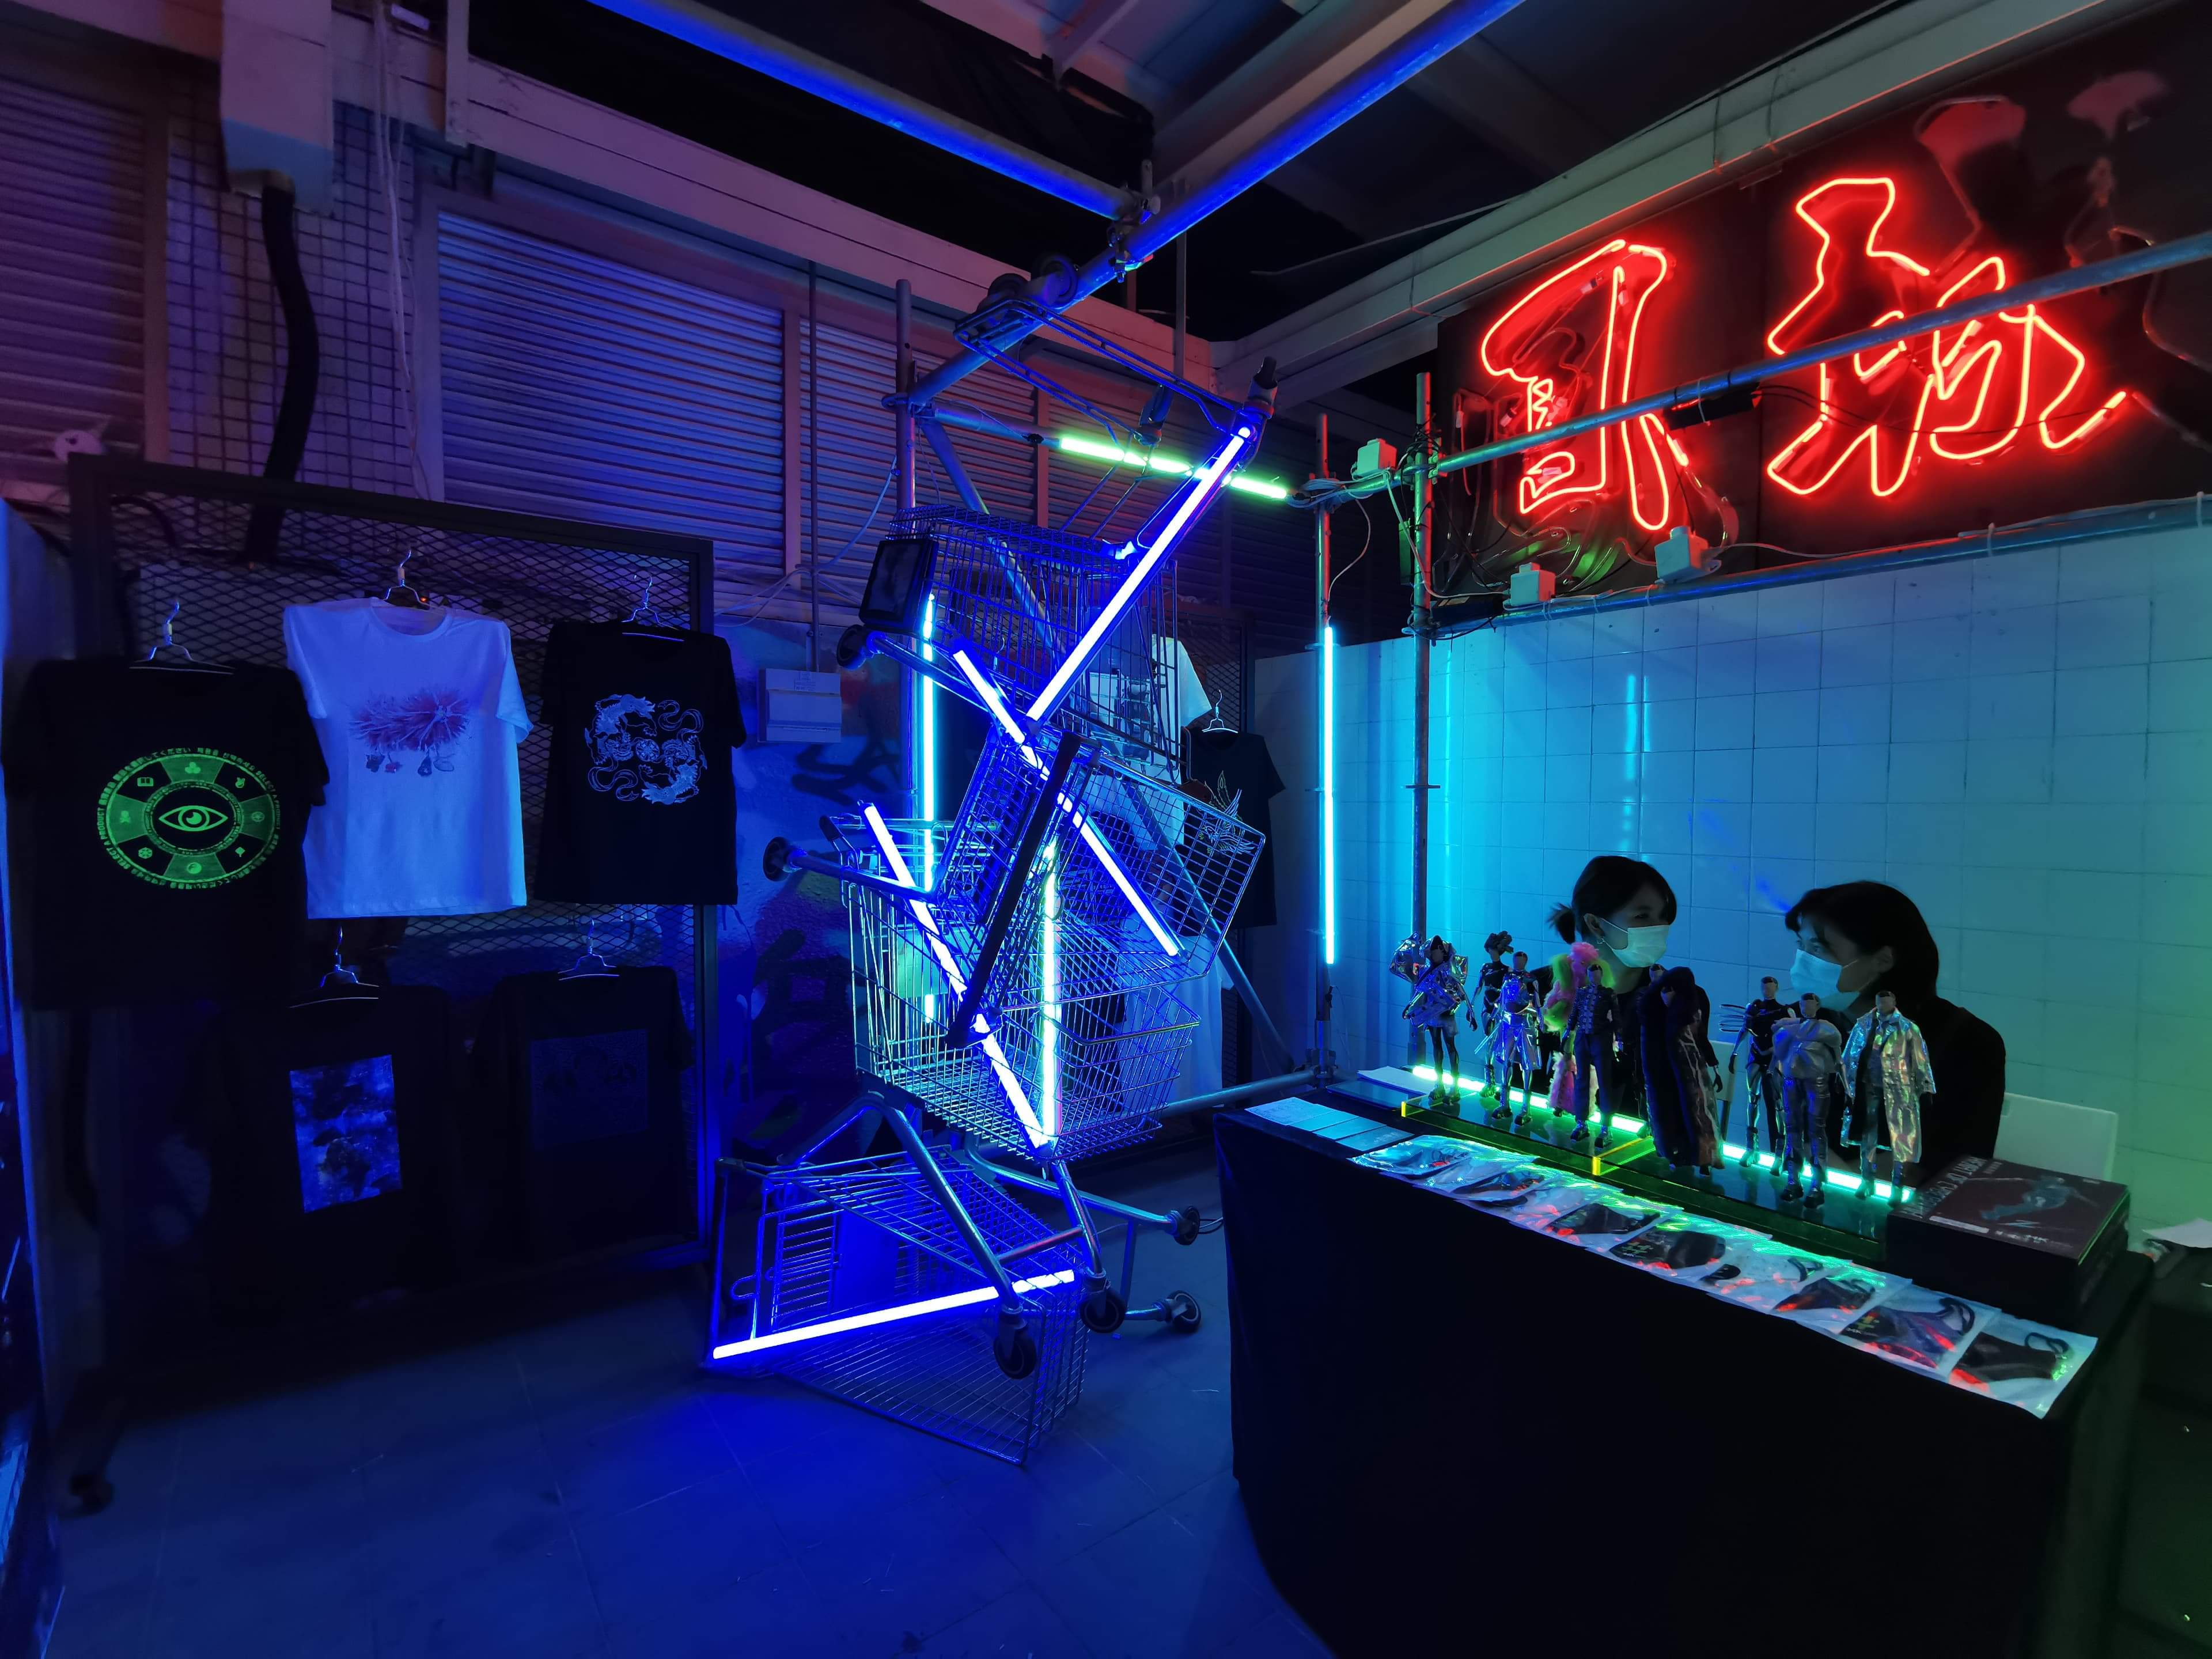 由香港設計中心主辦、於2018年啟動的三年創意旅遊發展計劃「#ddHK 設計#香港地」(Design District Hong Kong)將於今年10月17至25日於深水埗推出全新創意地方營造項目，傾力打造創意時尚體驗「數碼龐克號」，配合2020/21年度主題「transFORM蛻變」，項目將聯同深水埗區內店舖、不同本地創意單位及國際業界精英，以一連串多元化活動及設計將整個深水埗區蛻變成未來城市模樣。（香港文匯網記者吳綺雯）